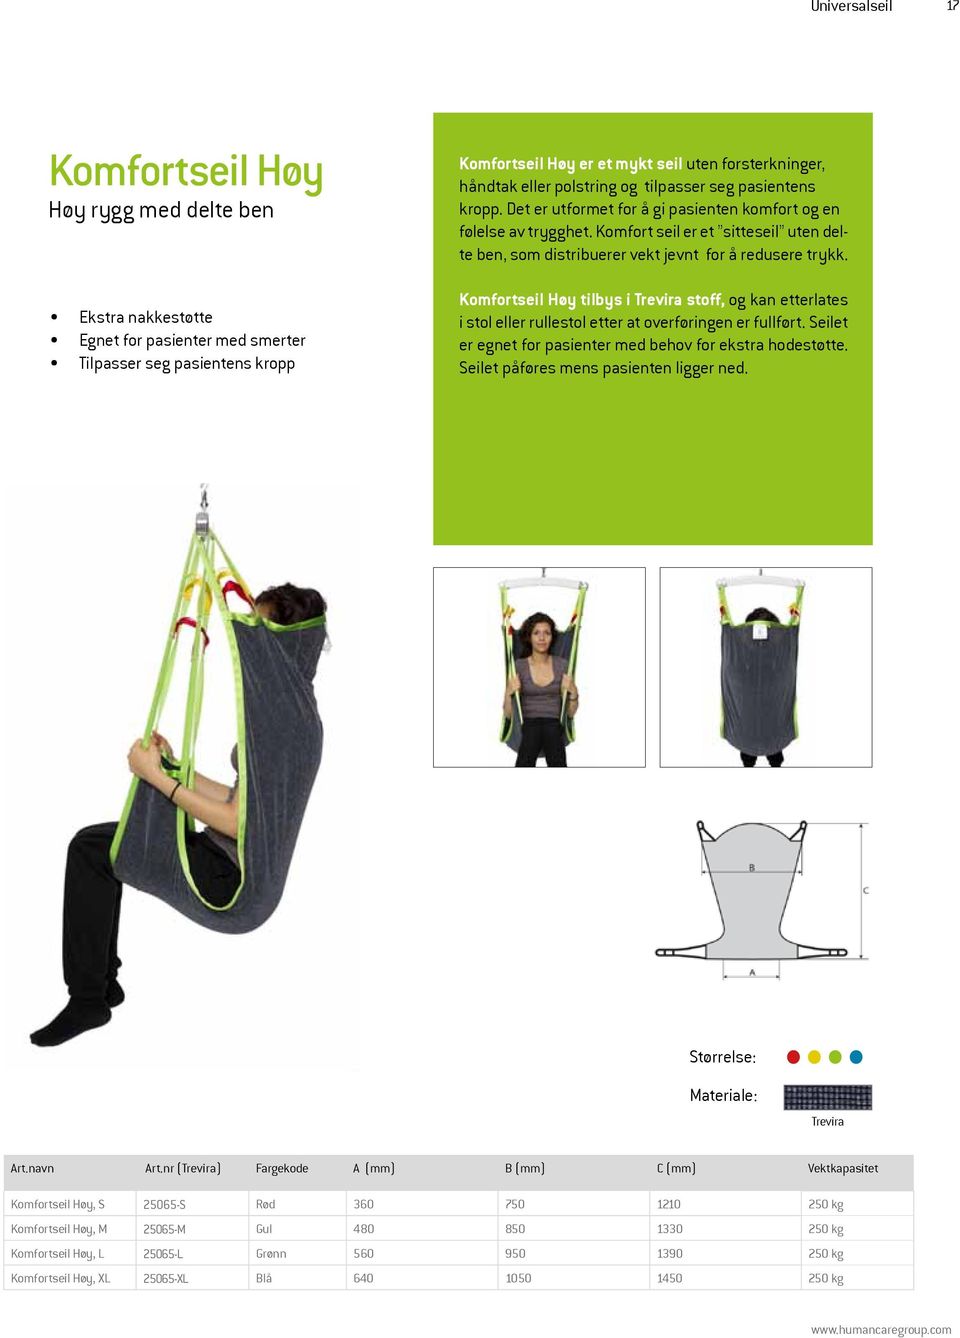 Komfort seil er et sitteseil uten delte ben, som distribuerer vekt jevnt for å redusere trykk.